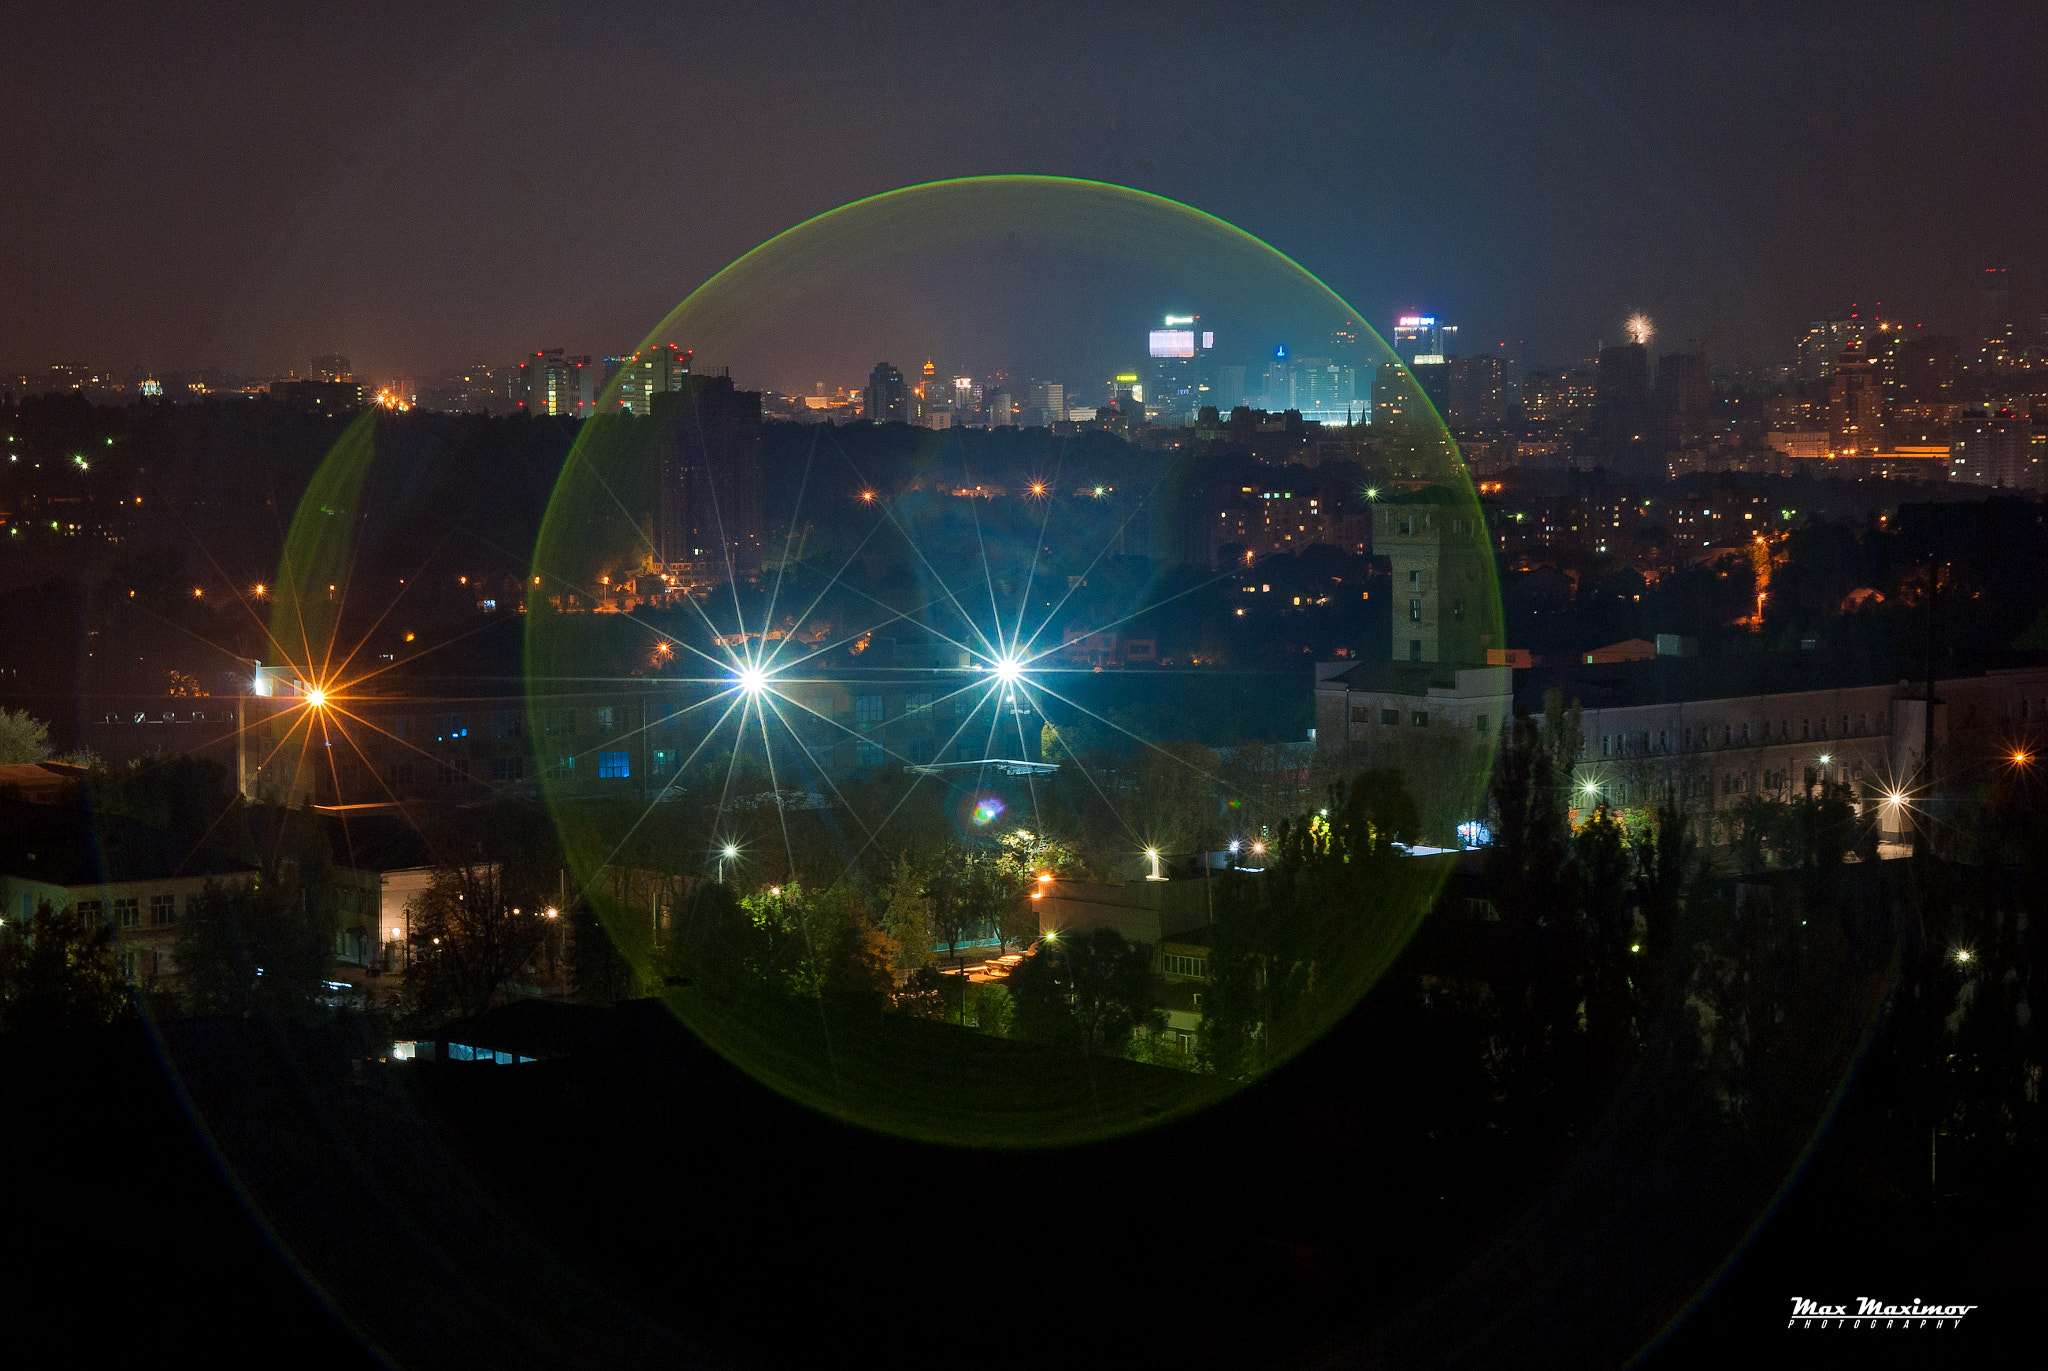 Nikon D200 + AF Zoom-Nikkor 24-120mm f/3.5-5.6D IF sample photo. Night sphere photography